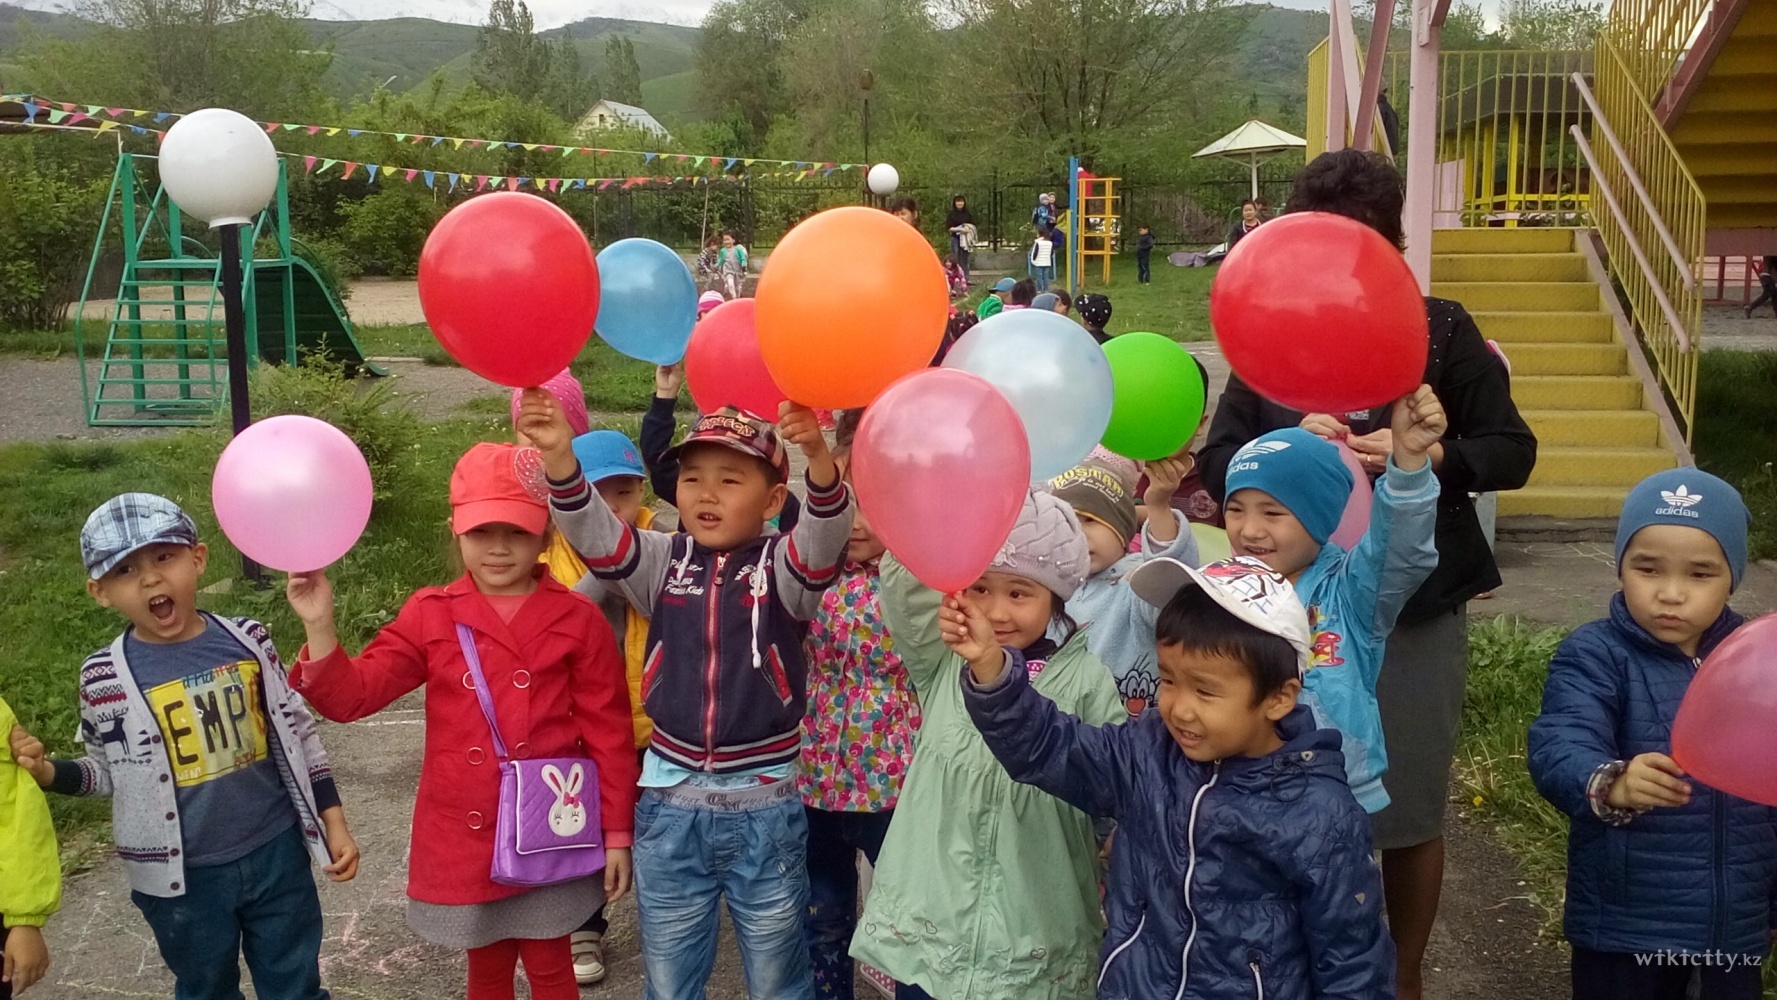 Фото Детский сад №166 - Алматы